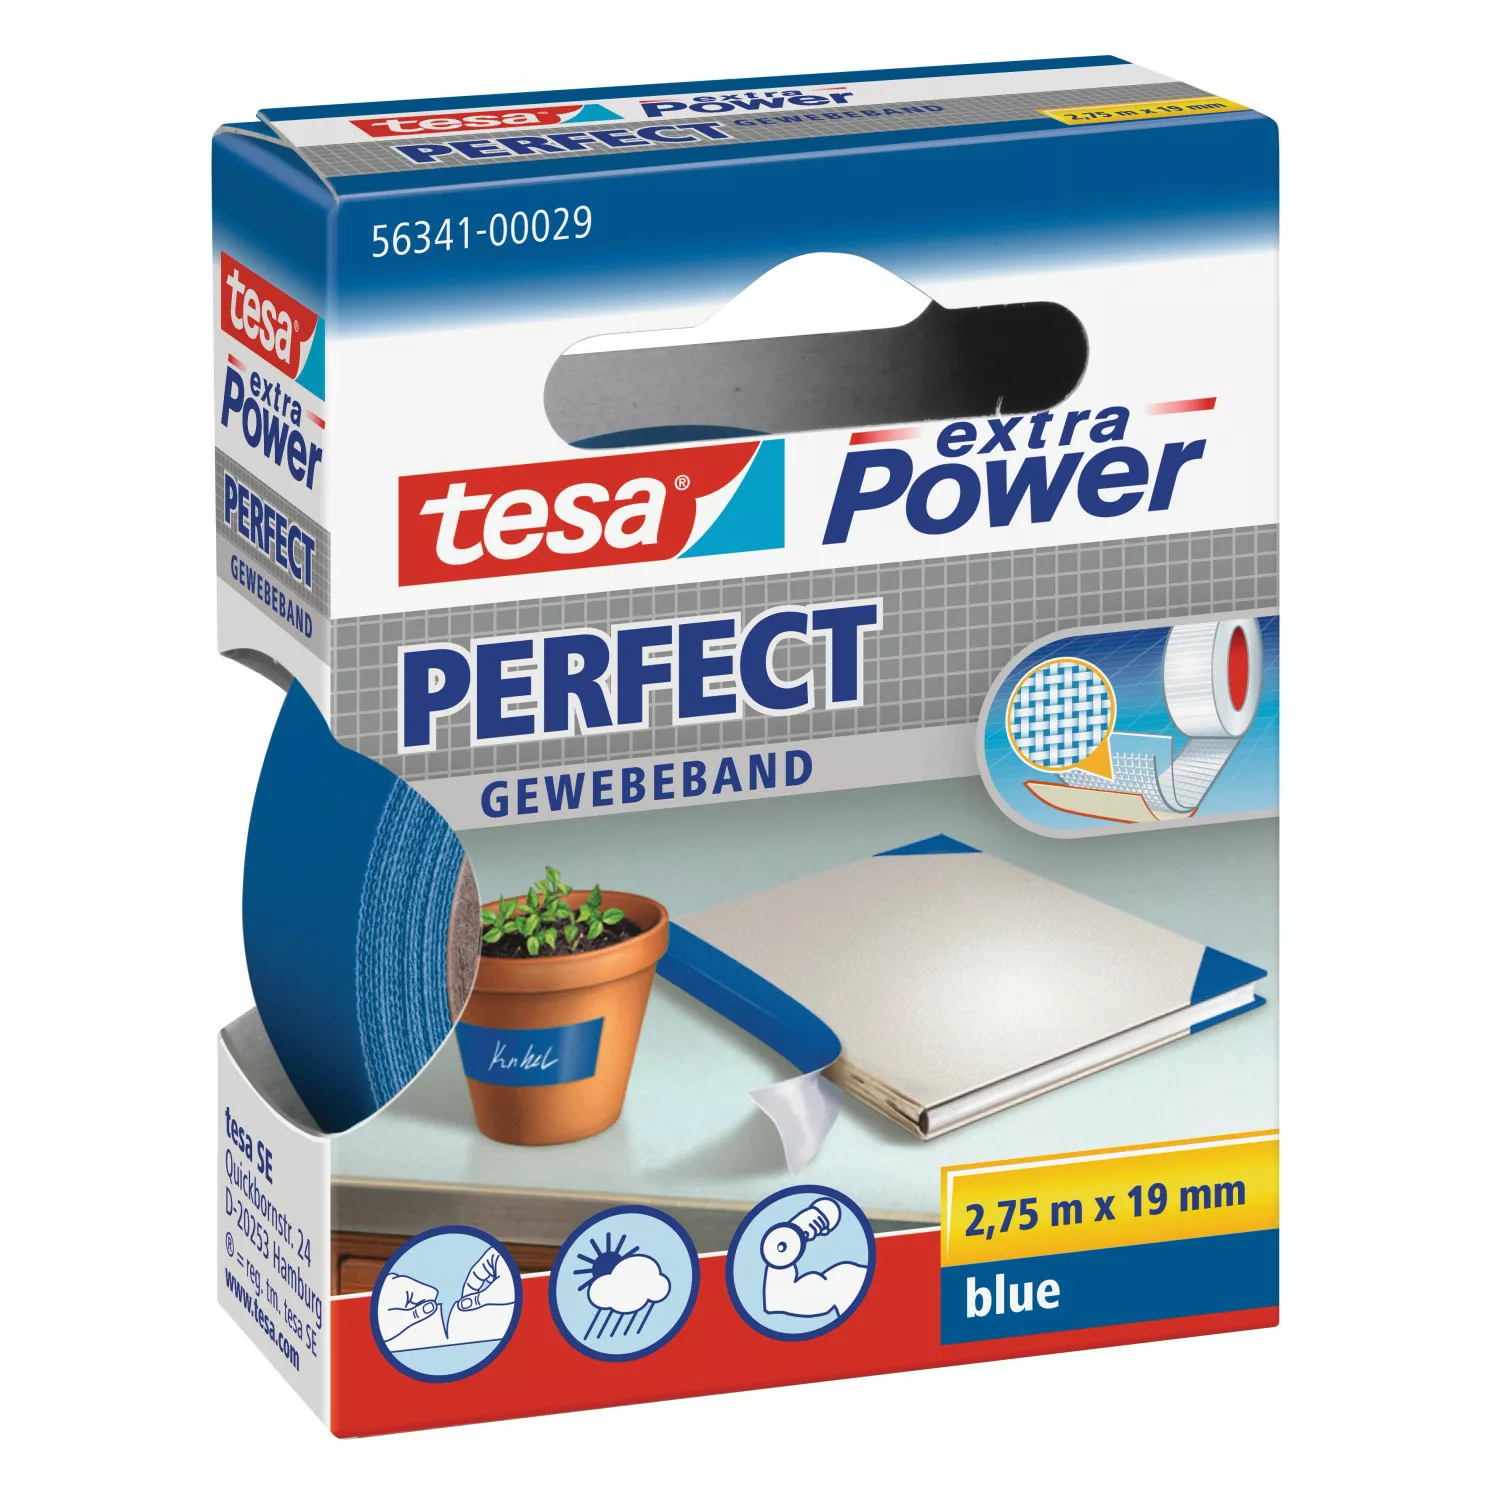 Tesa Extra Power Perfect Gewebeband Blau 2,75 m x 19 mm günstig online kaufen